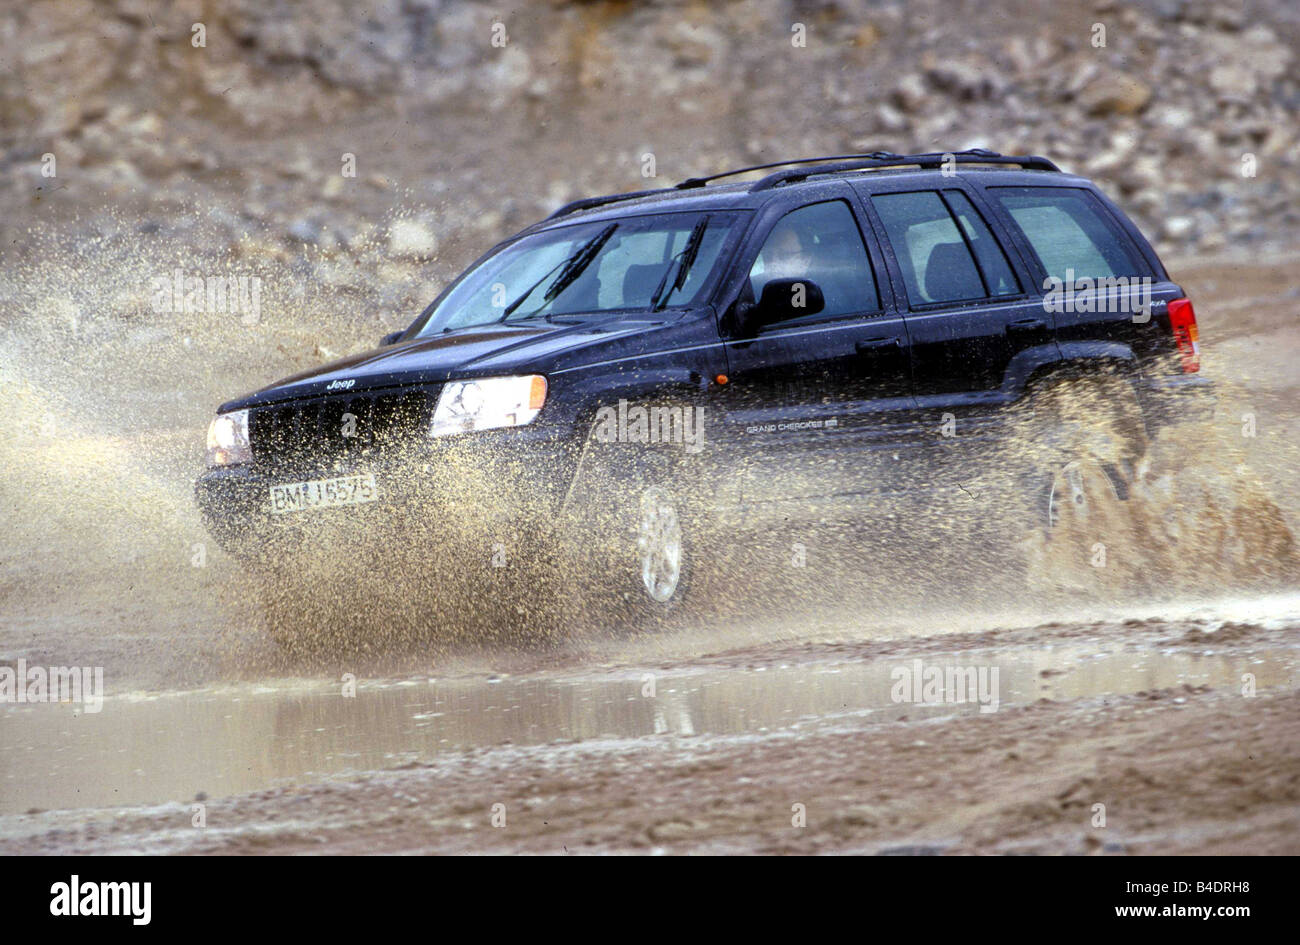 Voiture, Chrysler Jeep Grand Cherokee 3.1 TD, cross country, l'année de modèle du véhicule 1998-, noir, la conduite automobile, moto-cross, la diagonale de la fr Banque D'Images